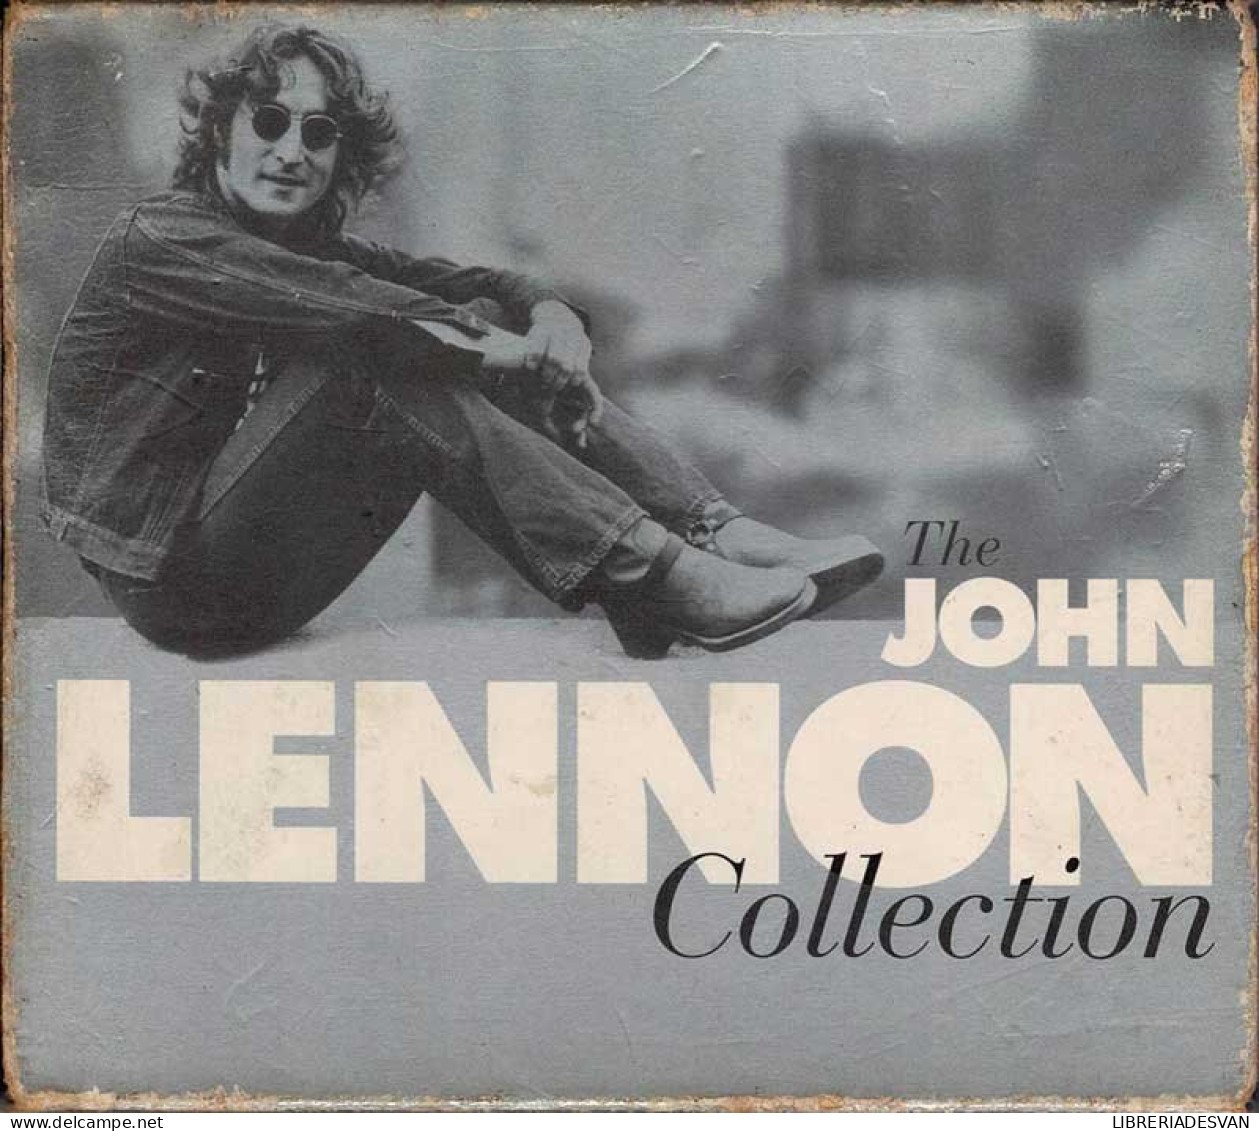 John Lennon - The John Lennon Collection. CD - Rock